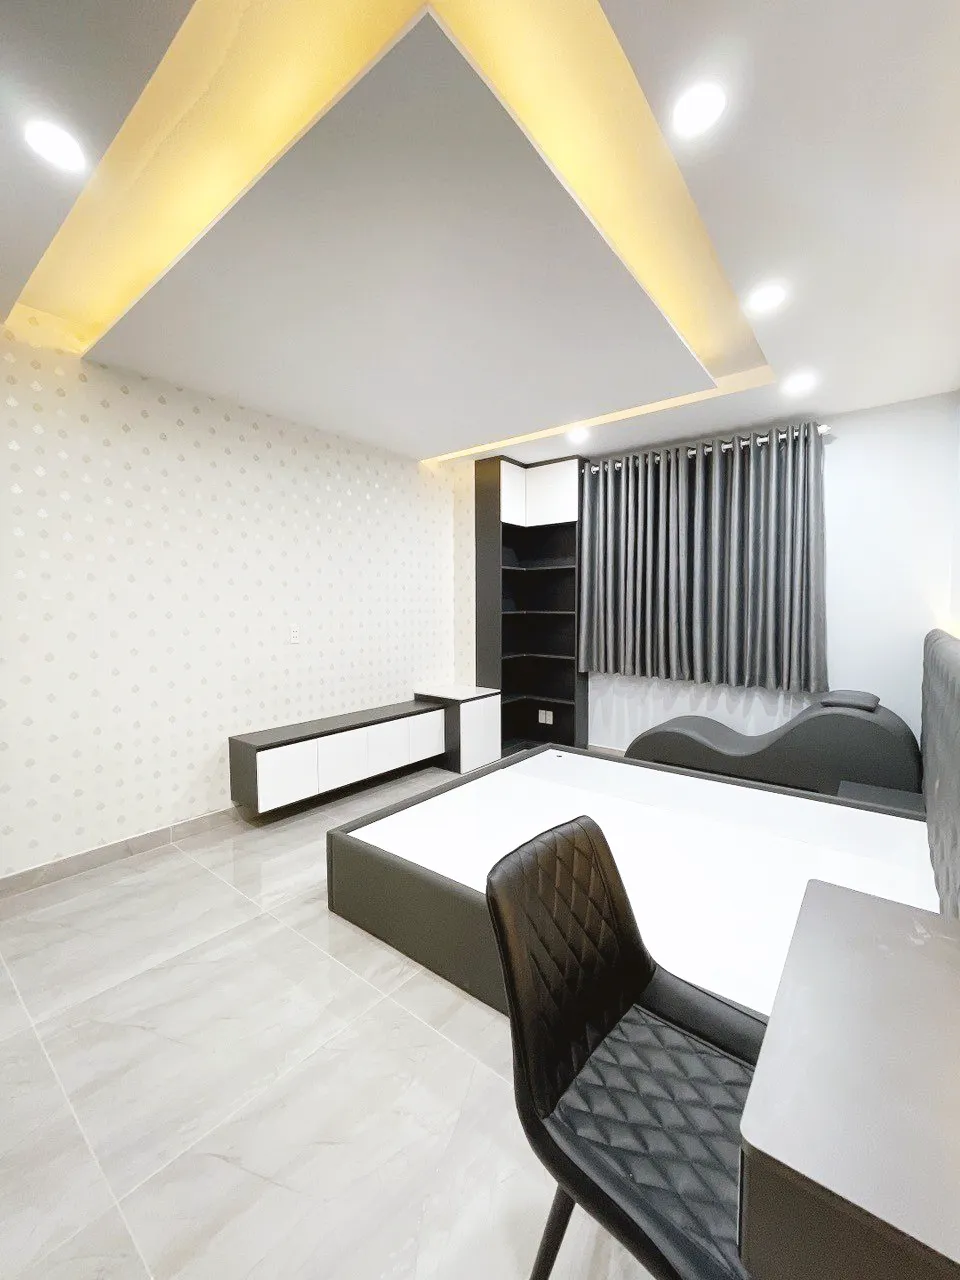 Hoàn thiện nội thất phòng ngủ Căn hộ chung cư H2 Hoàng Diệu phong cách Tối giản Minimalist